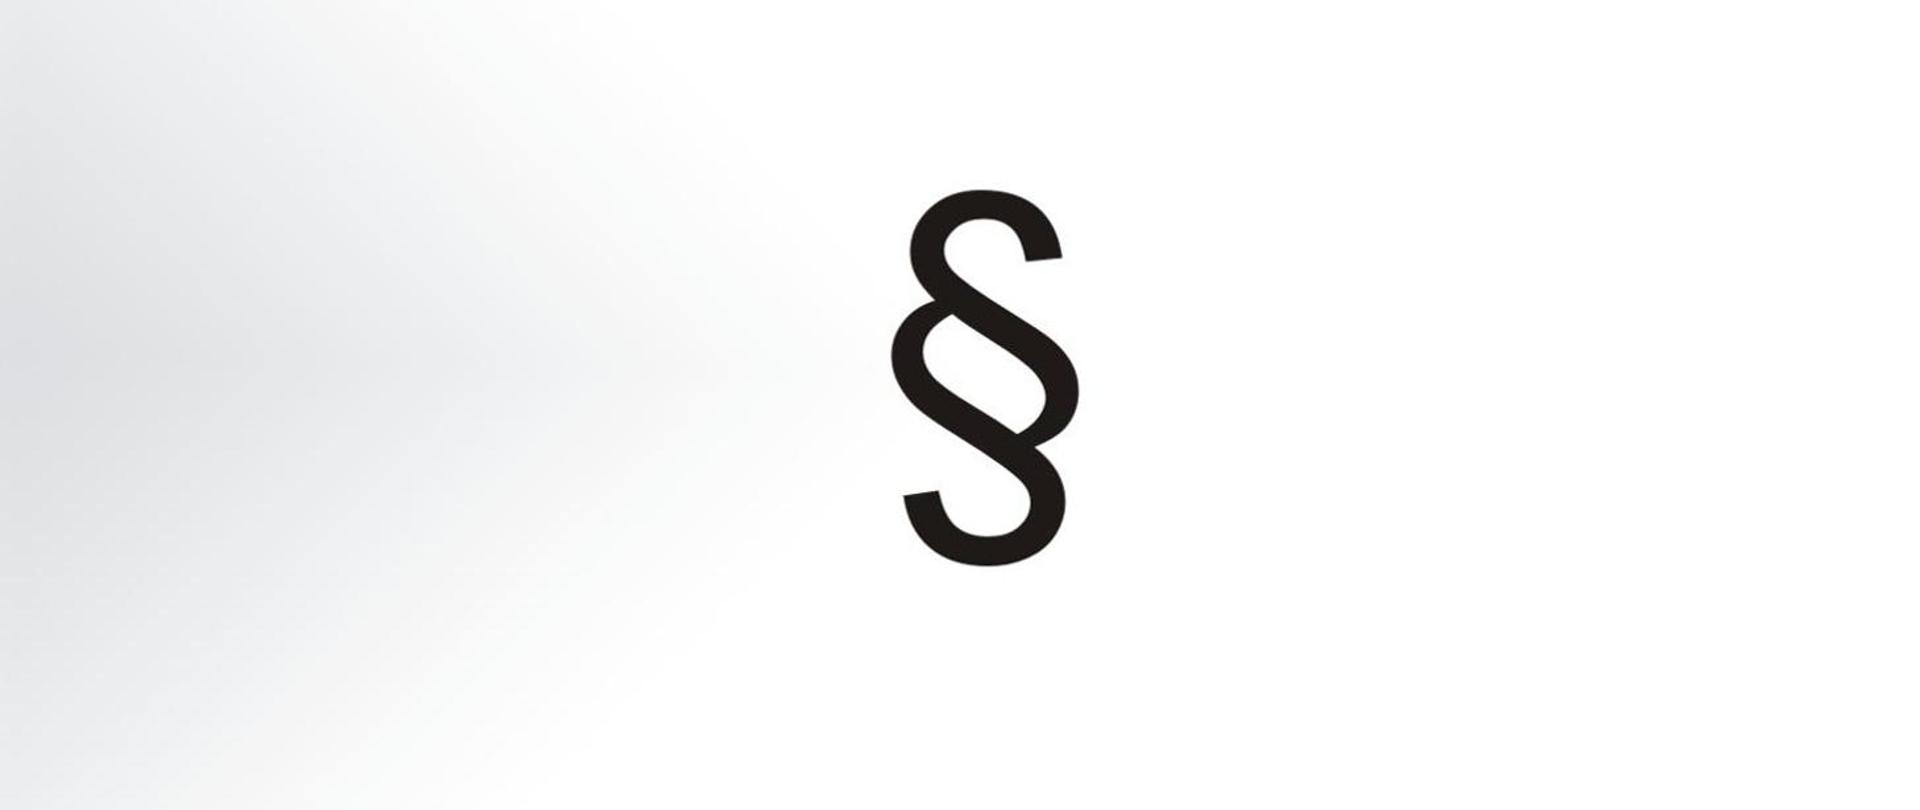 Grafika z symbolem znaku paragrafu, czarny symbol na biało-szarym tle